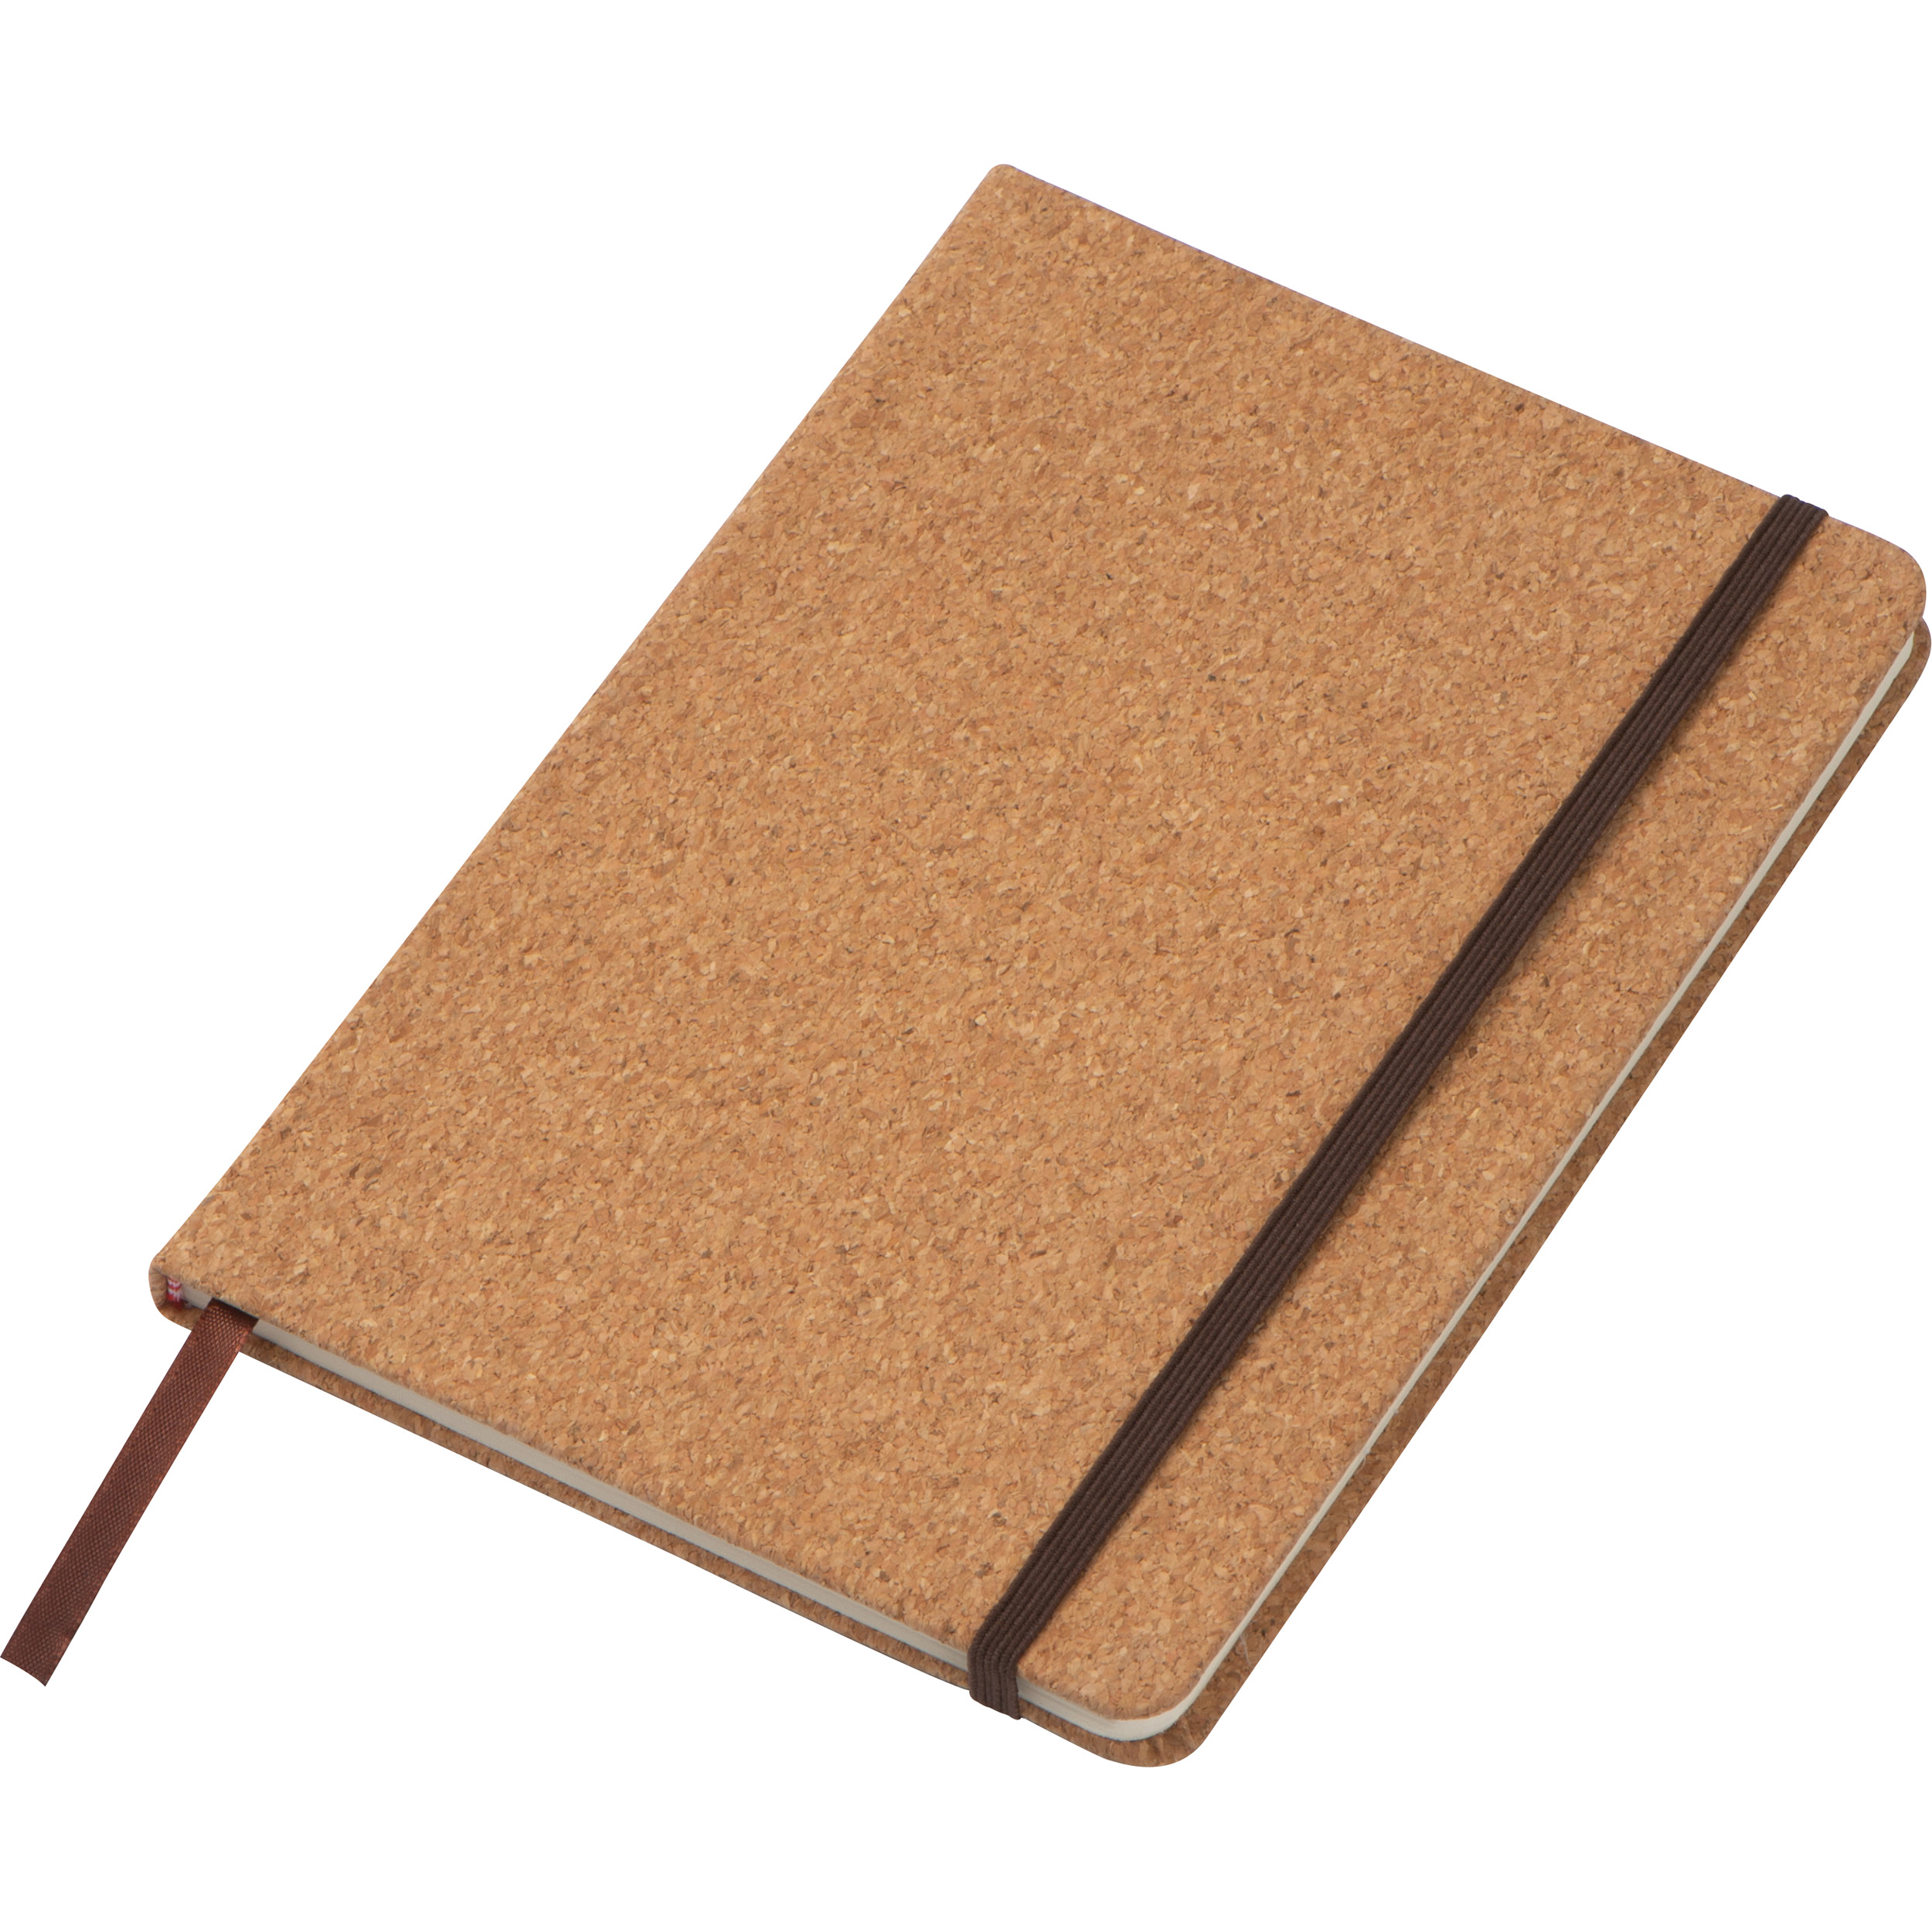 Cork notebook - DIN A5